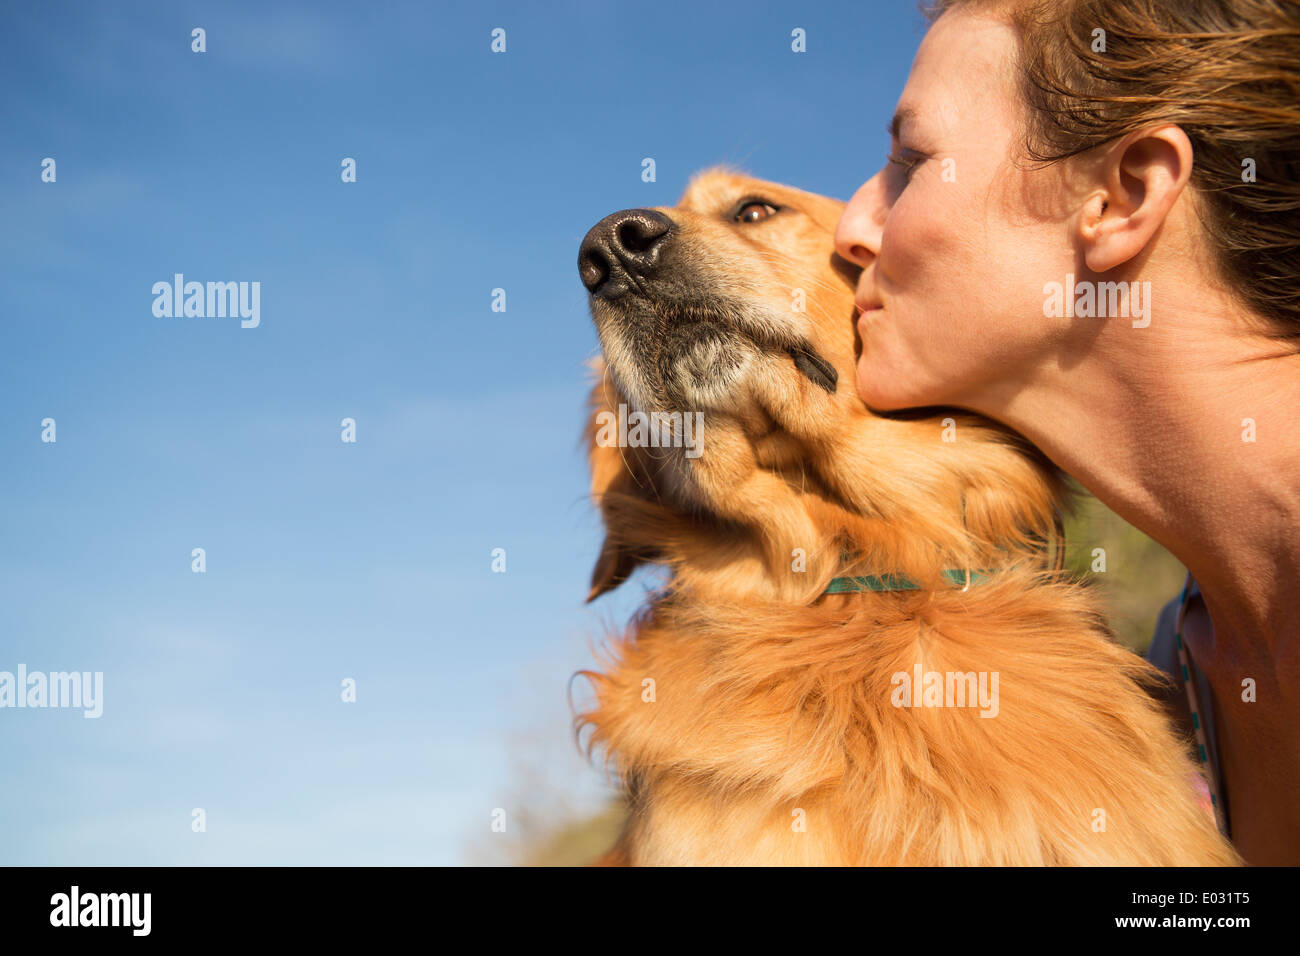 Una donna baciare un cane sulla guancia. Foto Stock